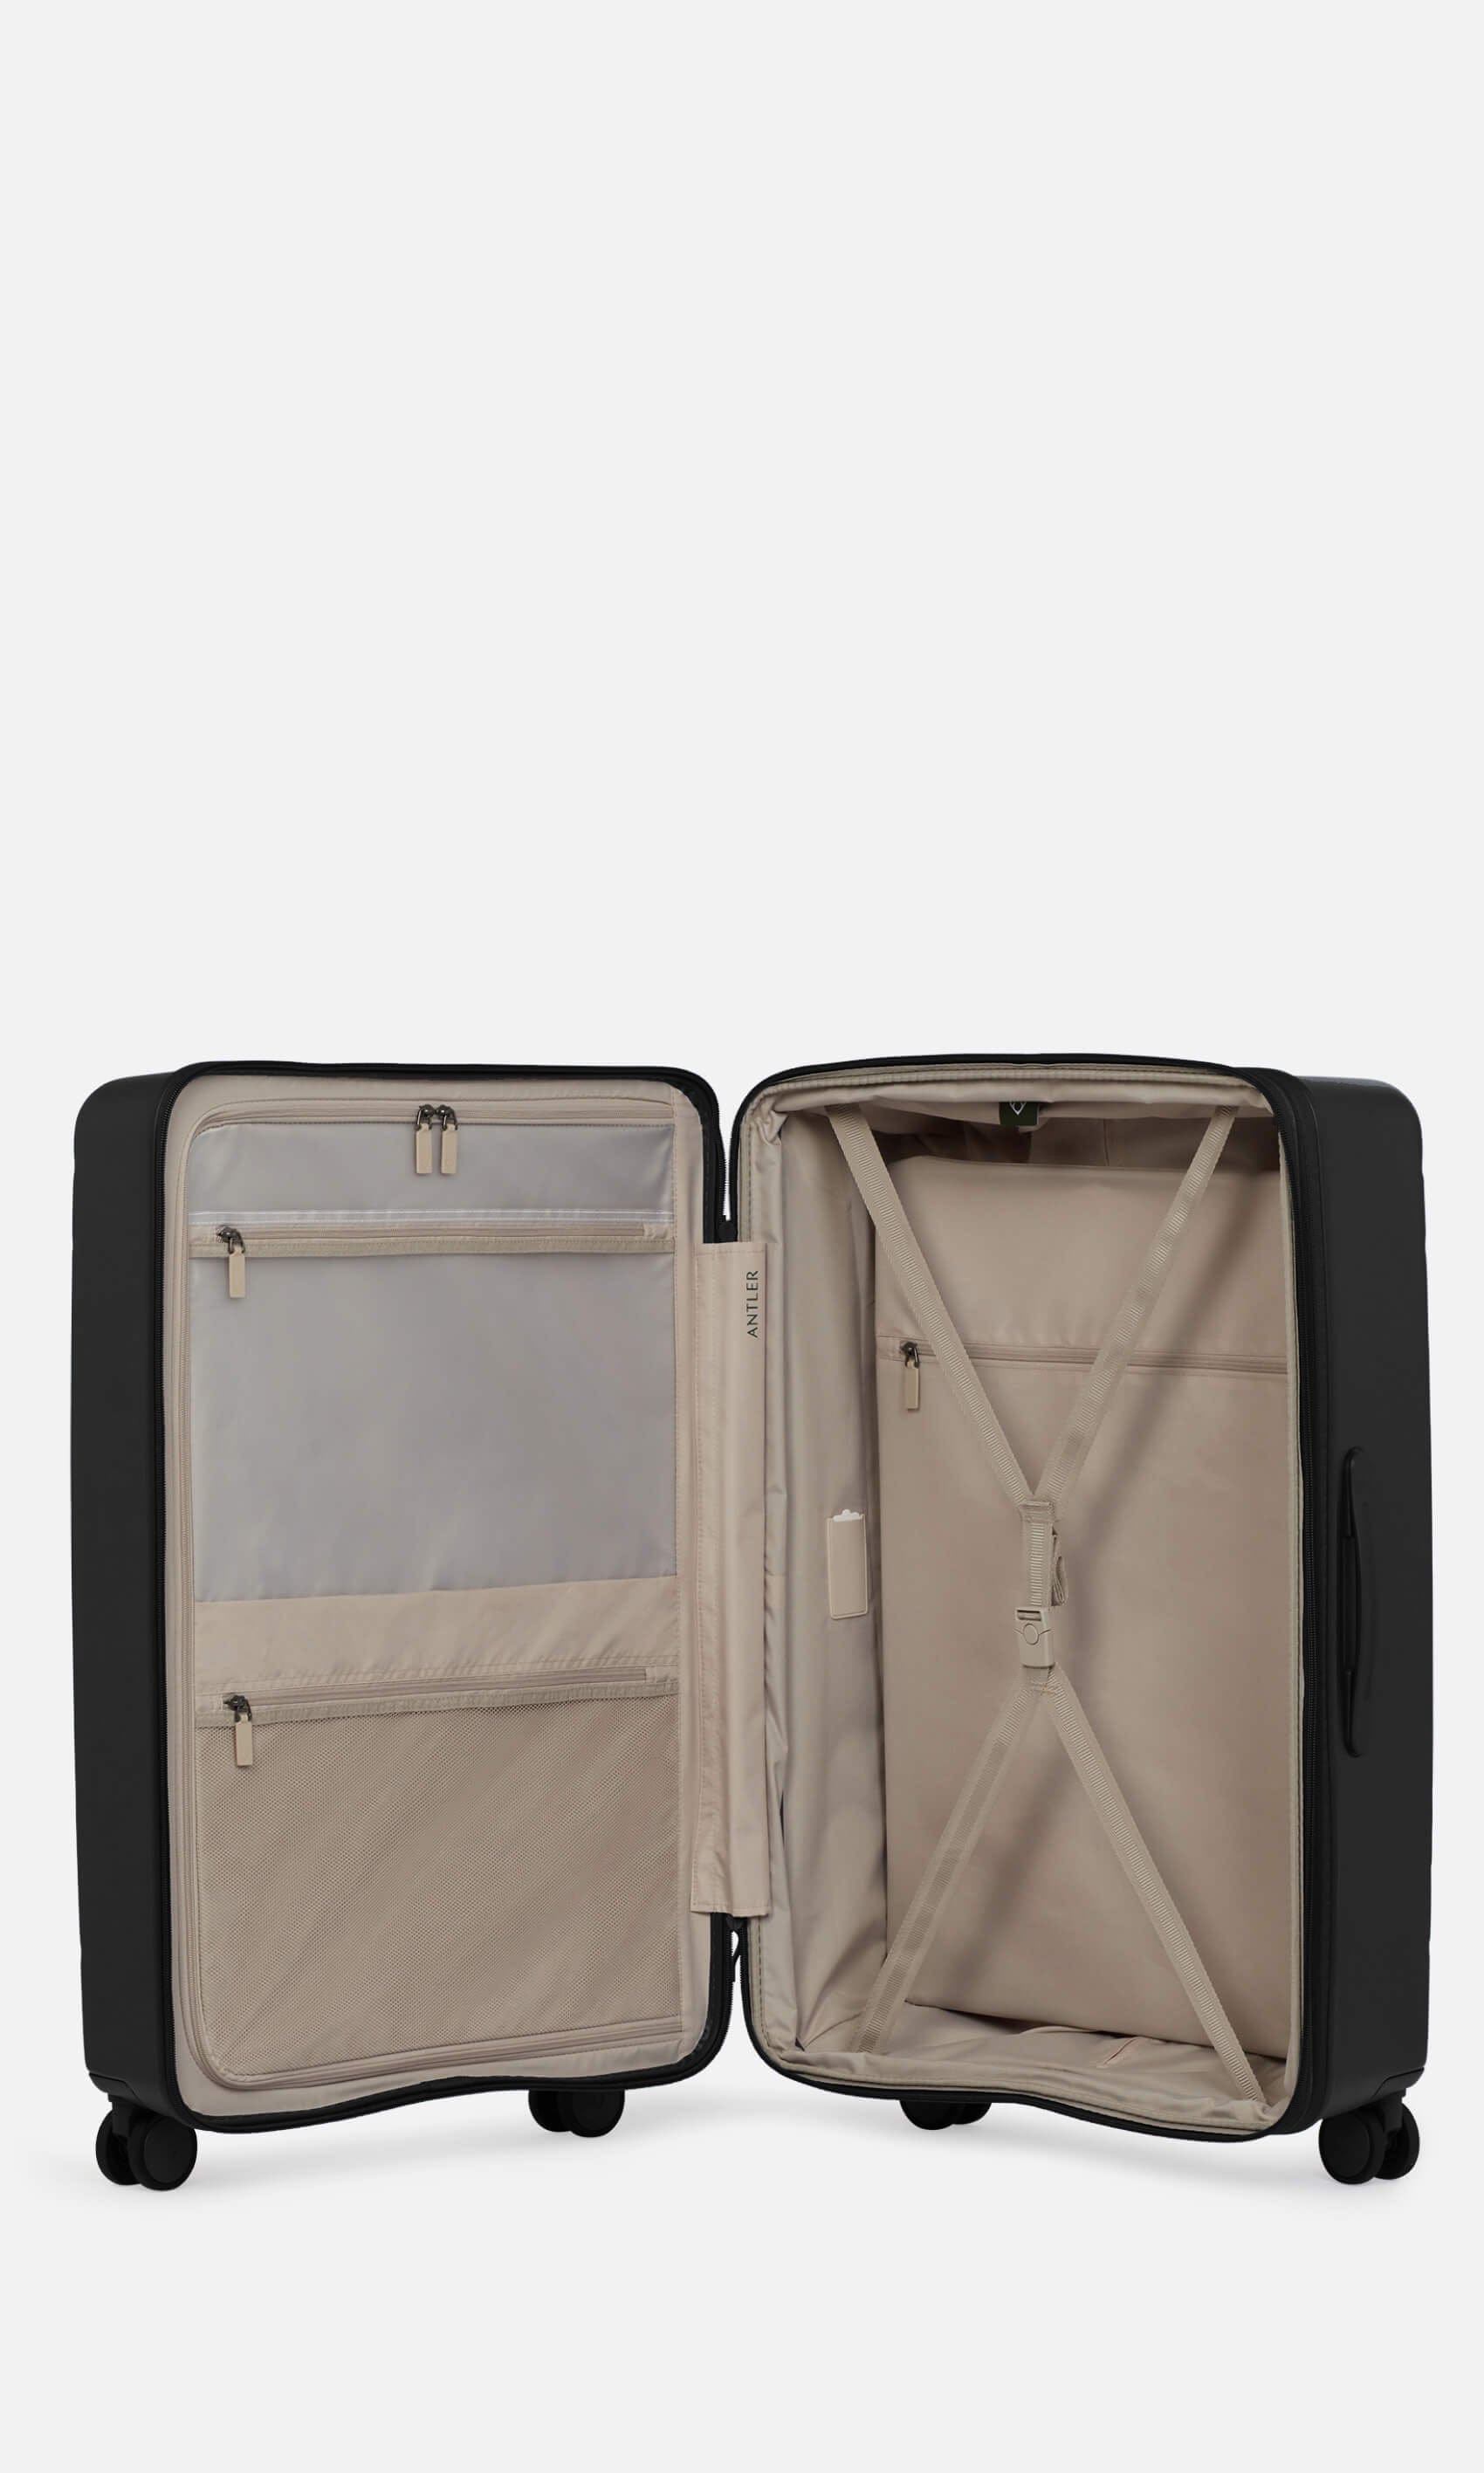 Antler Luggage -  Stamford large in midnight black - Hard Suitcases Stamford Large Suitcase Black | Hard Luggage | Antler UK